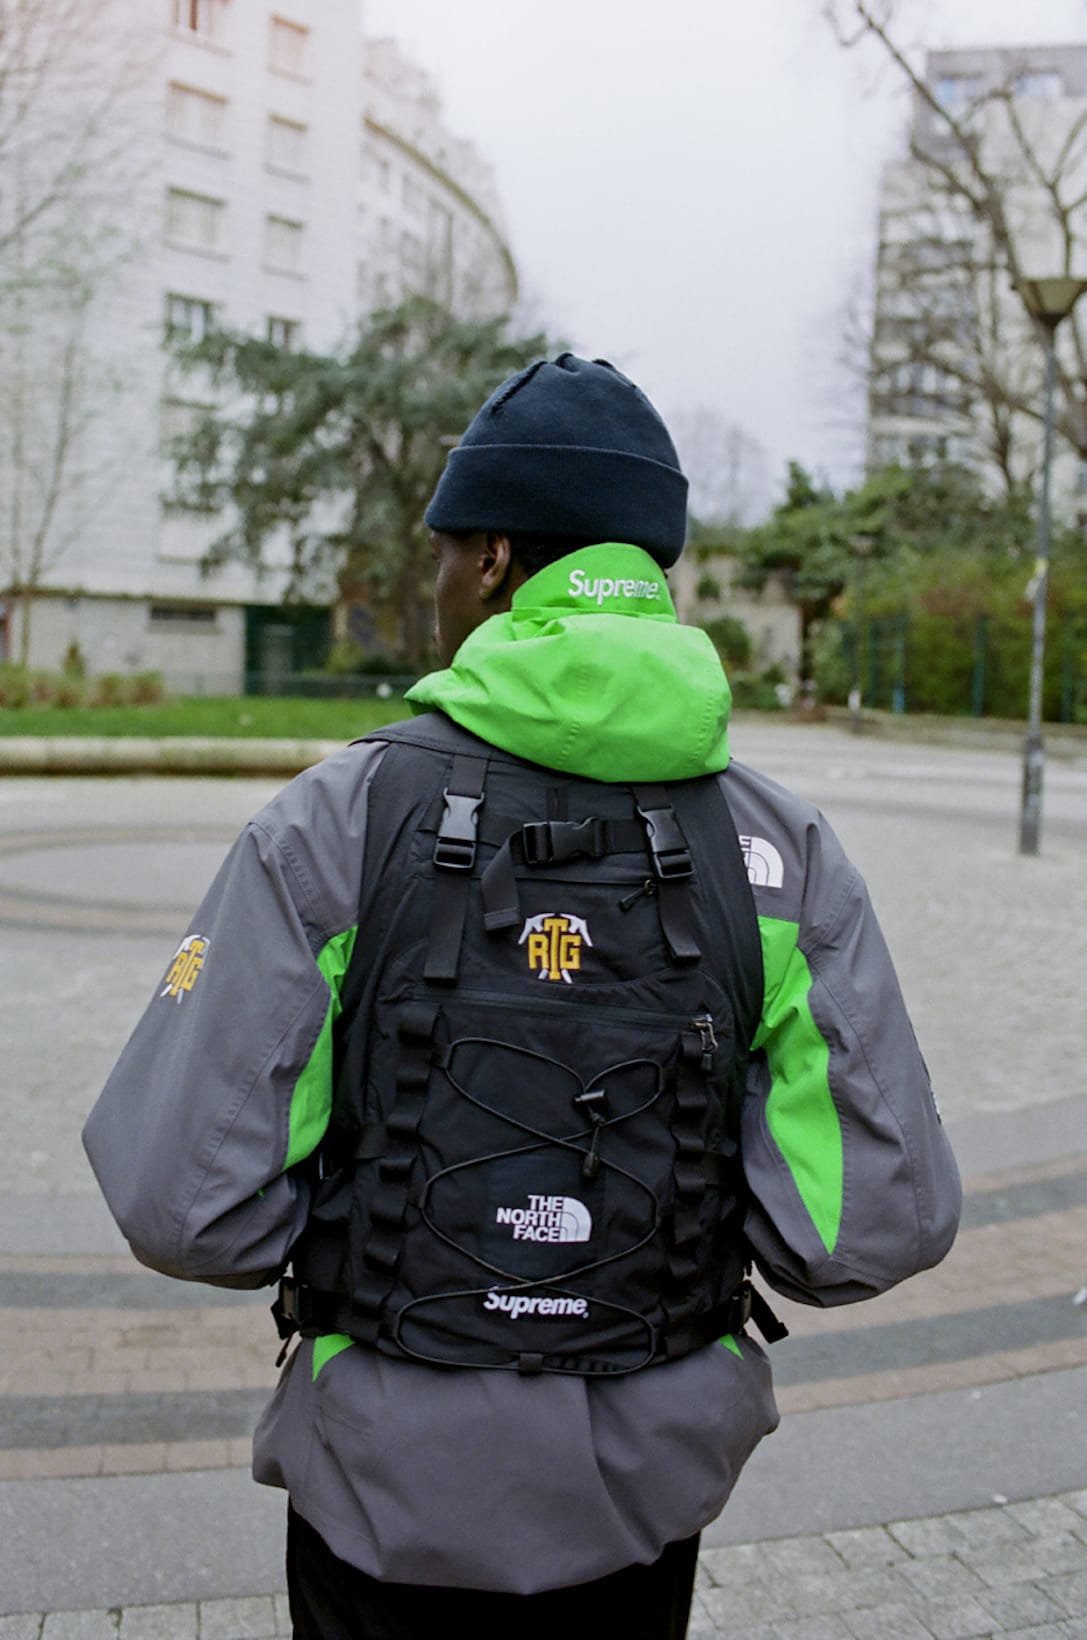 north face backpack vest